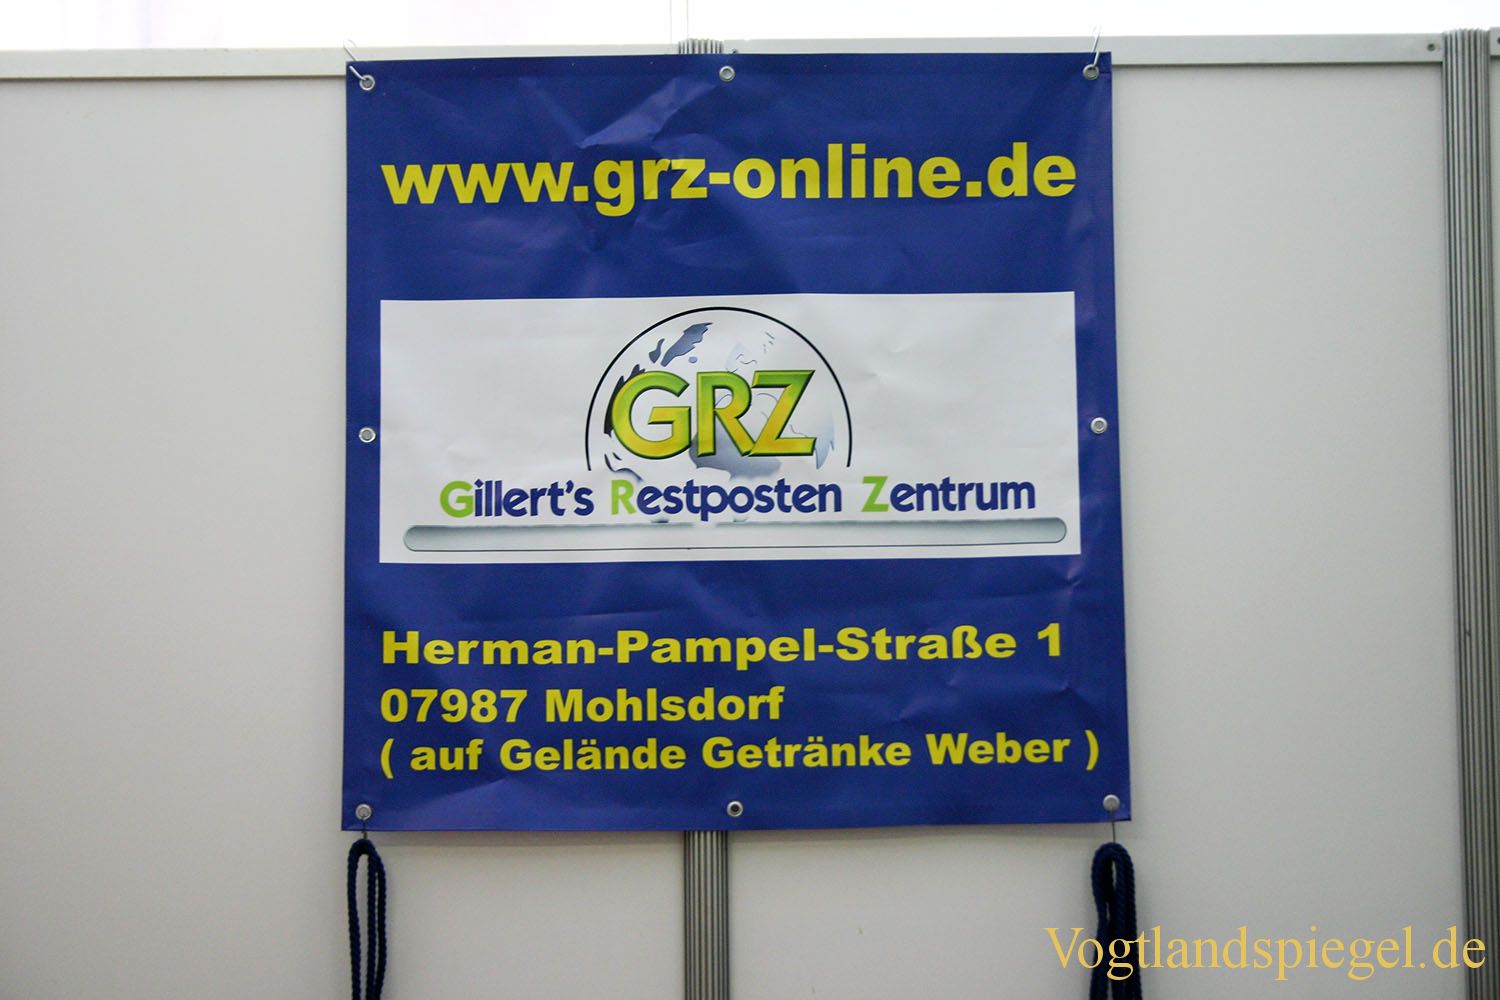 3. Göltzsch-Elster-Schau „Greiz’05“ vom 01.09 bis 04.09.2005